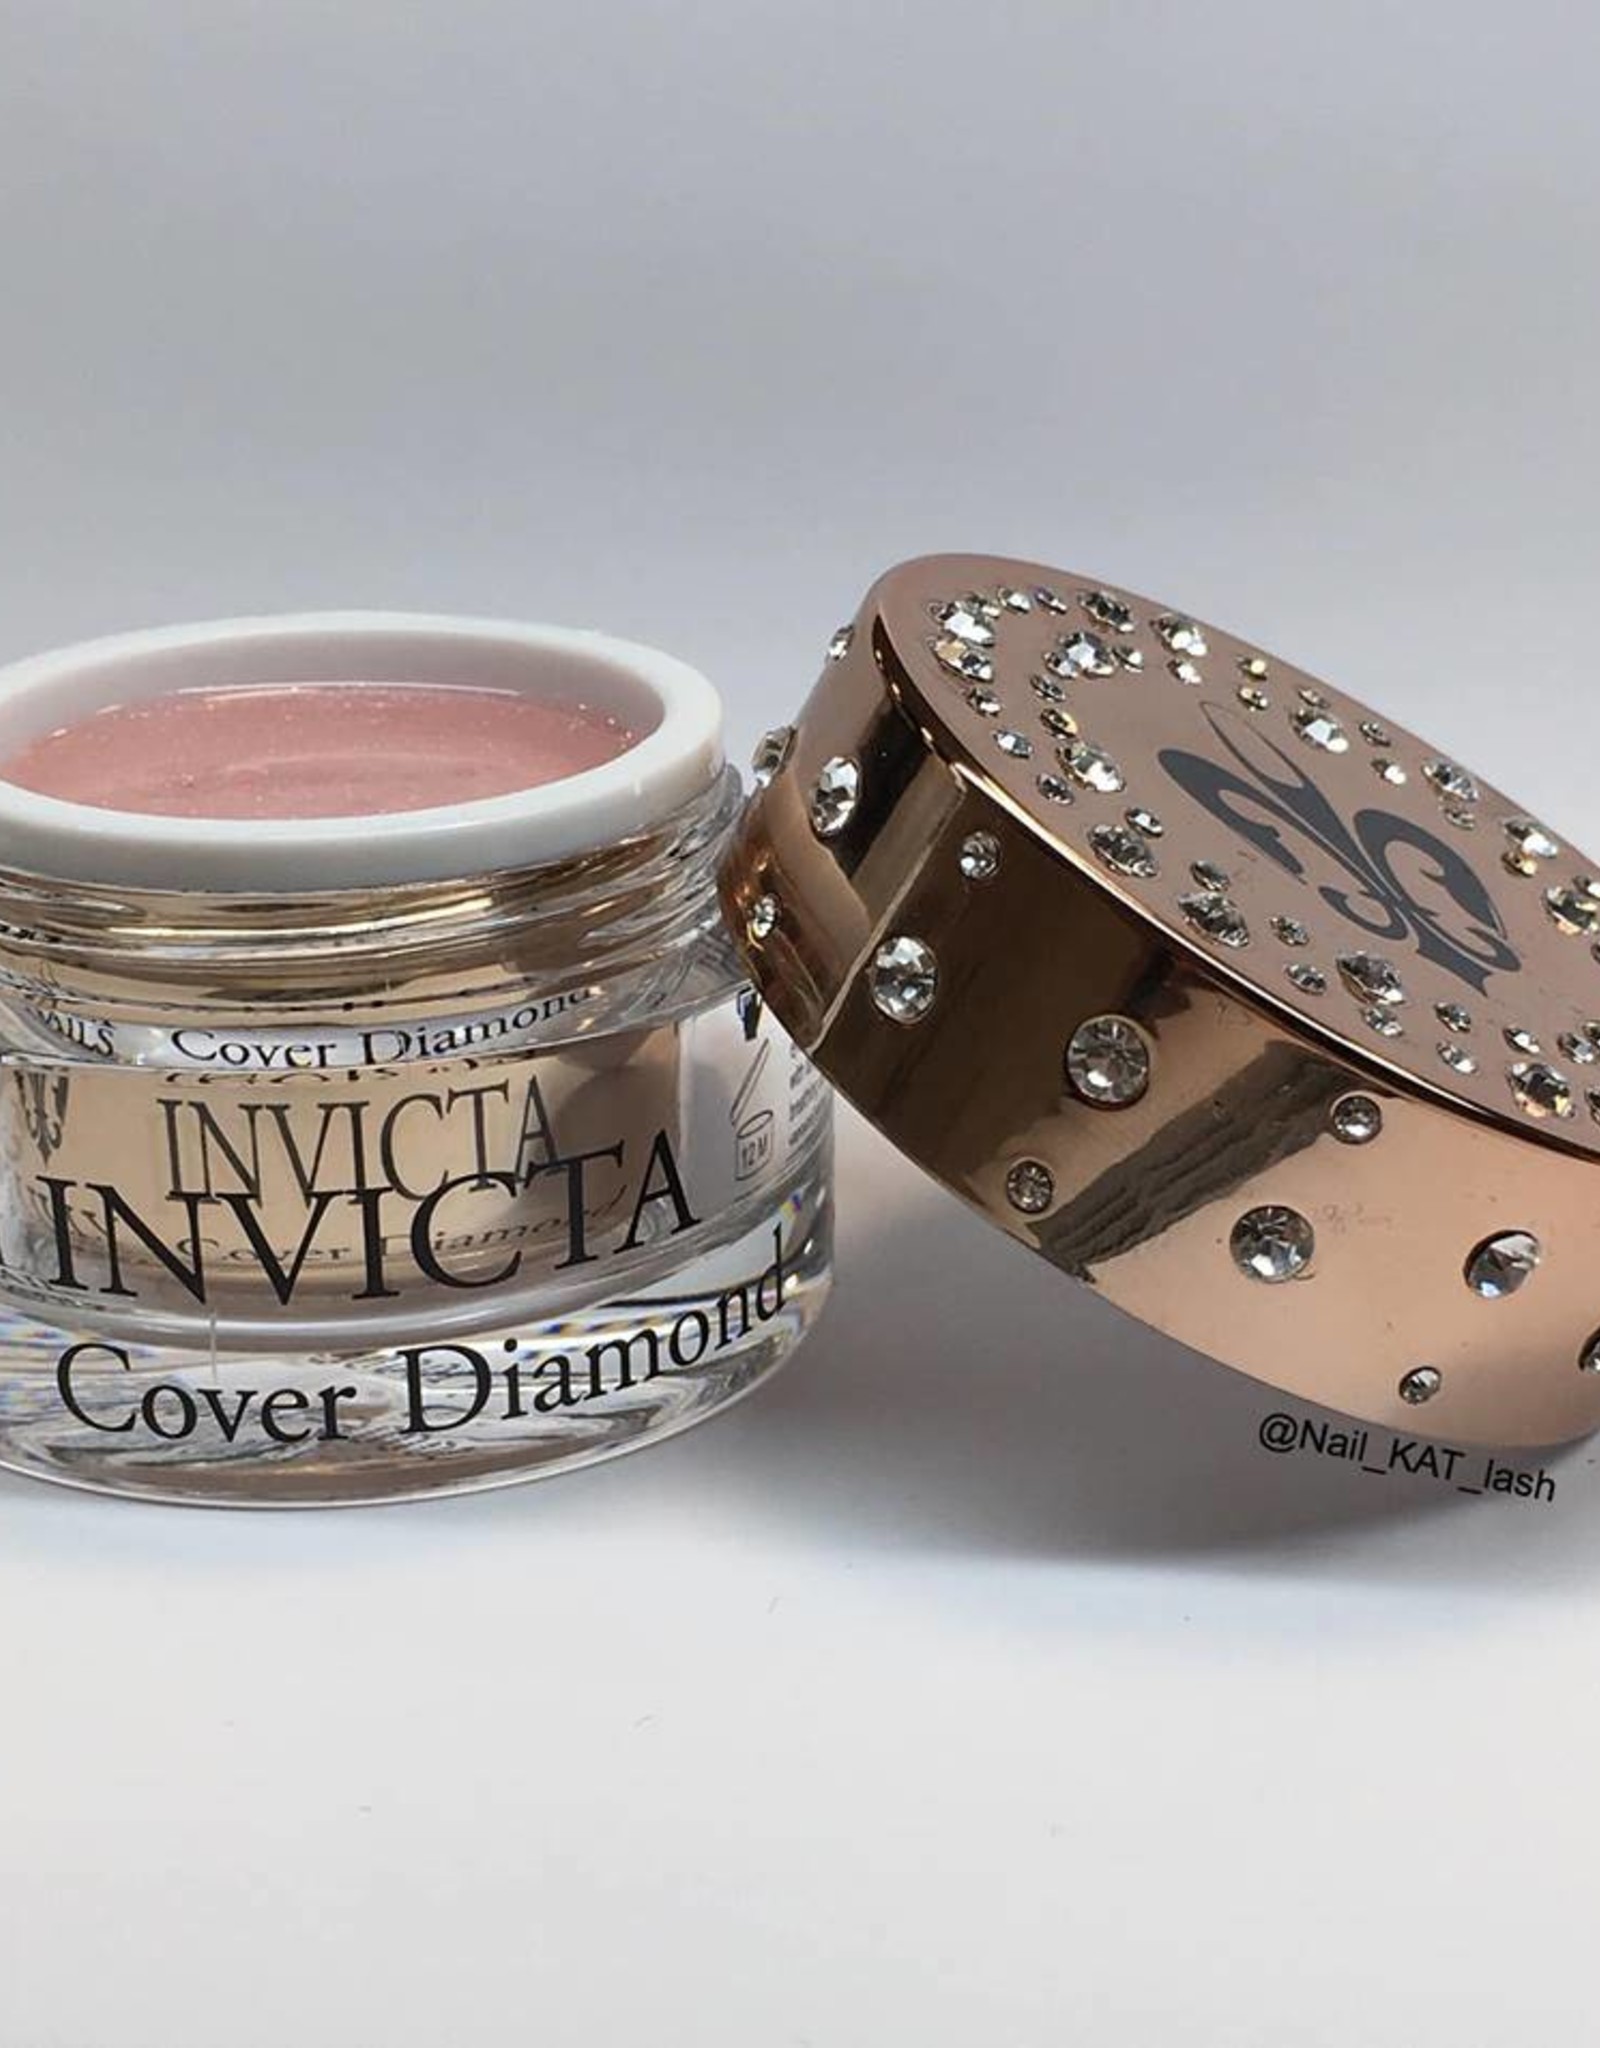 Invicta Cover Diamond